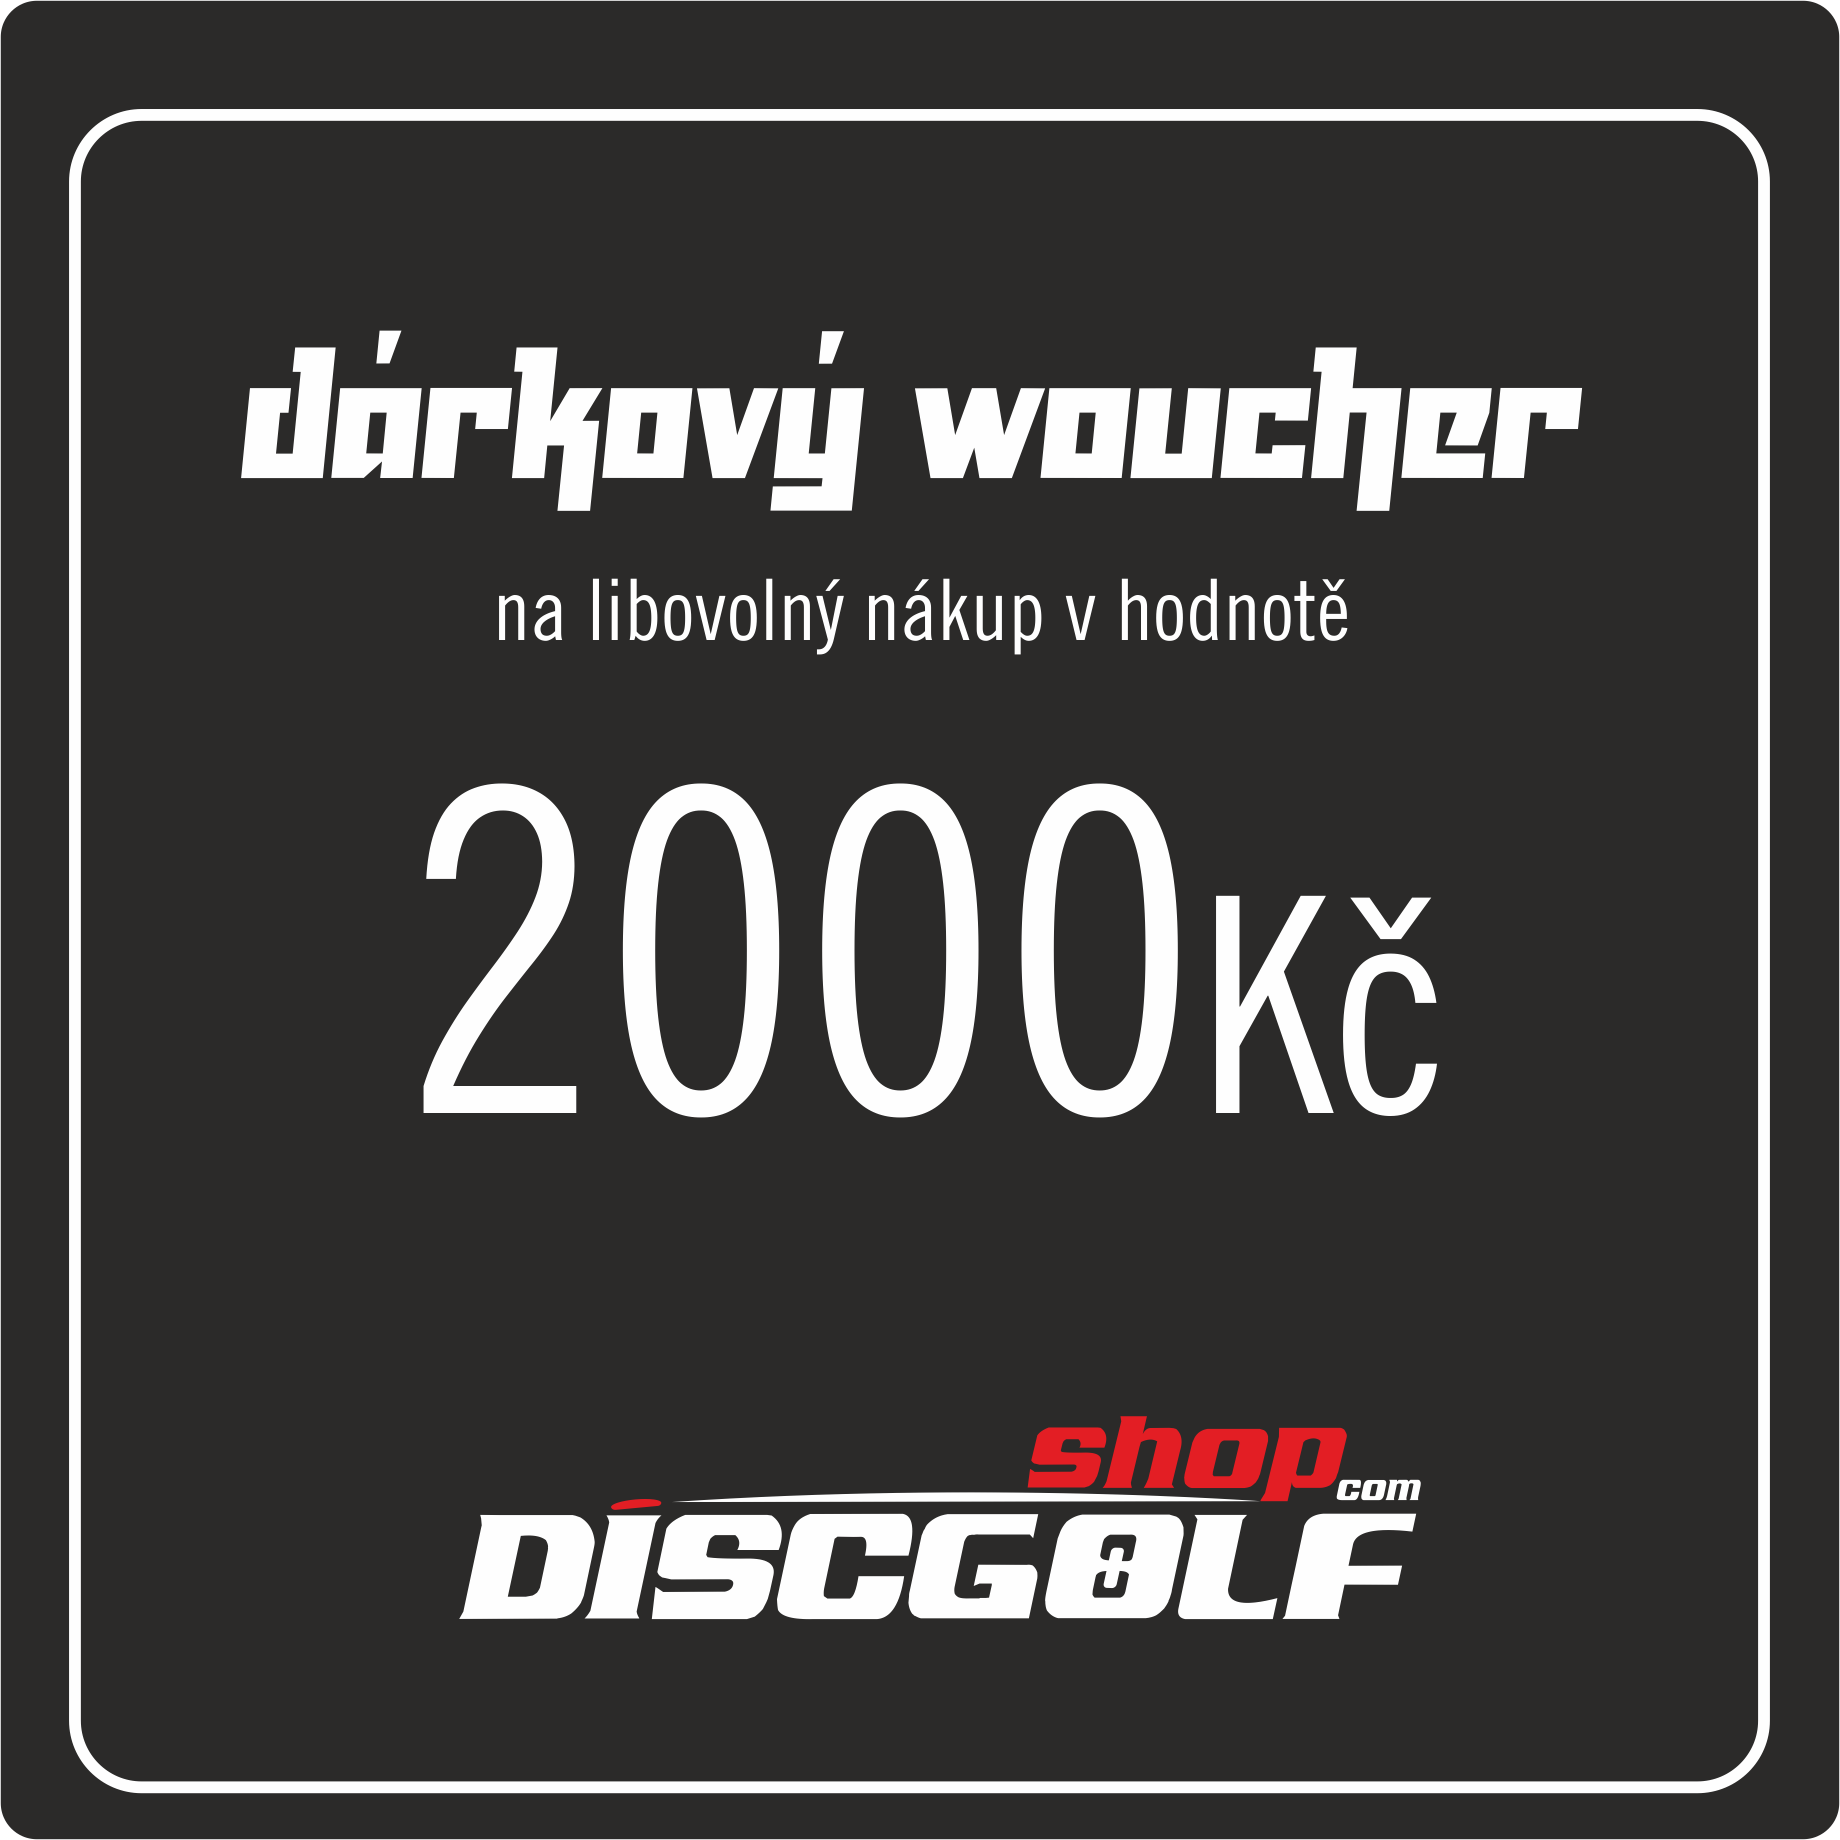     Dárkový woucher - kupon 2000Kč